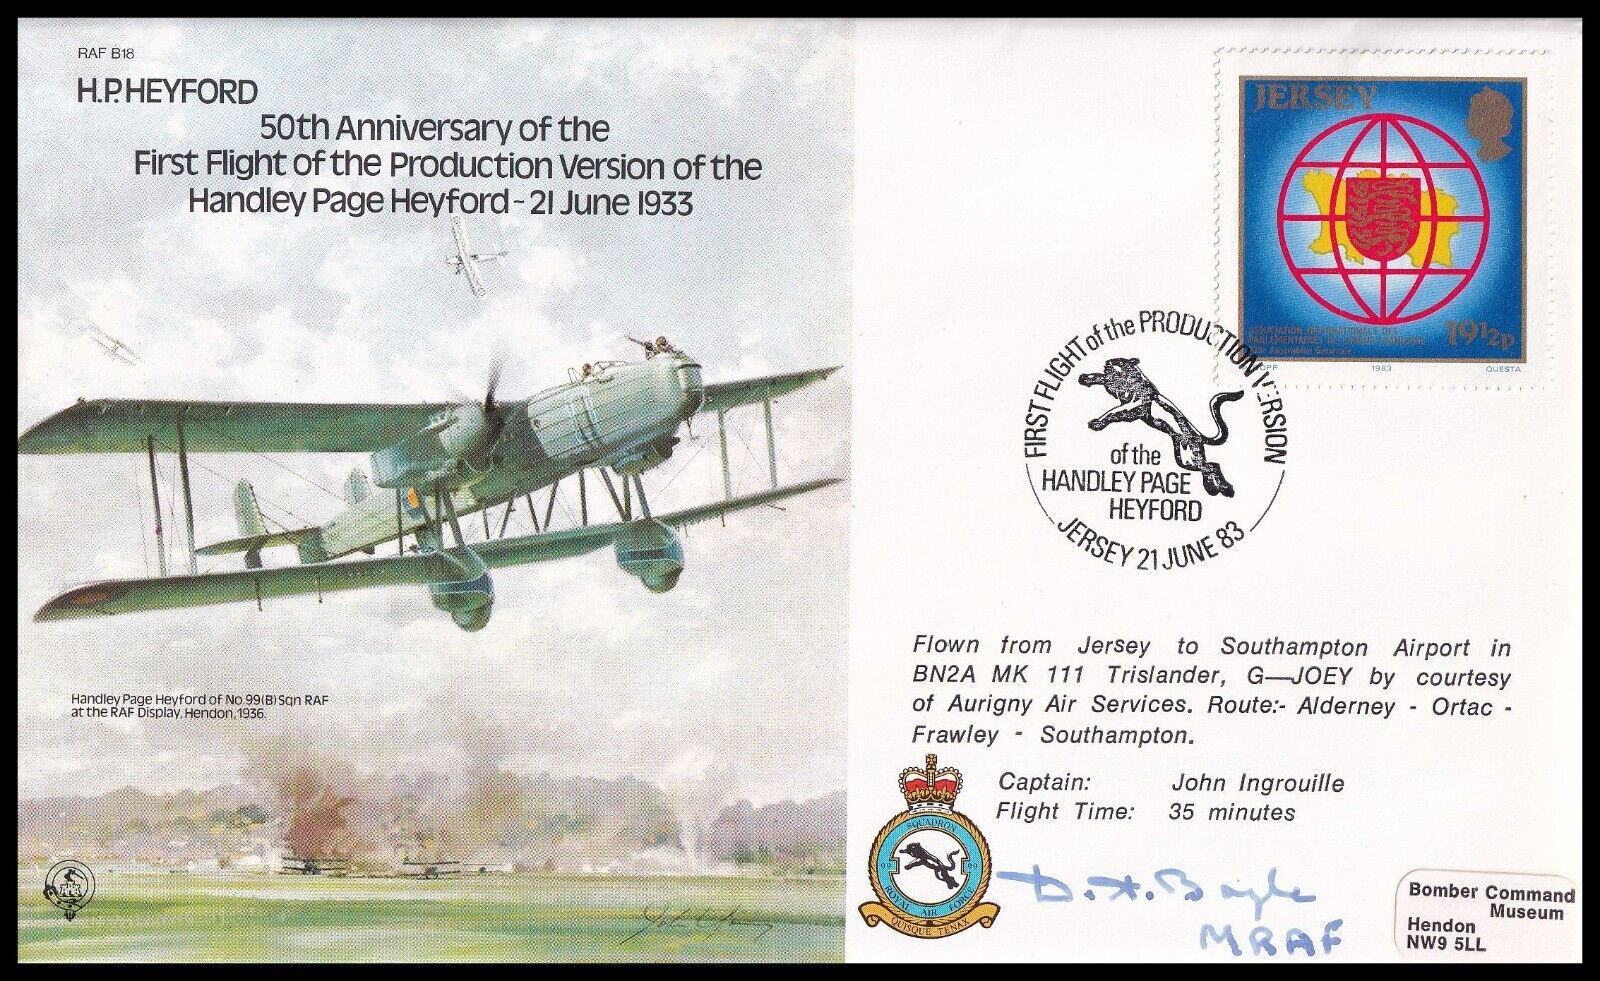 MRAF SIR DERMOT BOYLE GCB KCVO KBE AFC Signed RAF B18c H.P. Heyford Bomber Cover